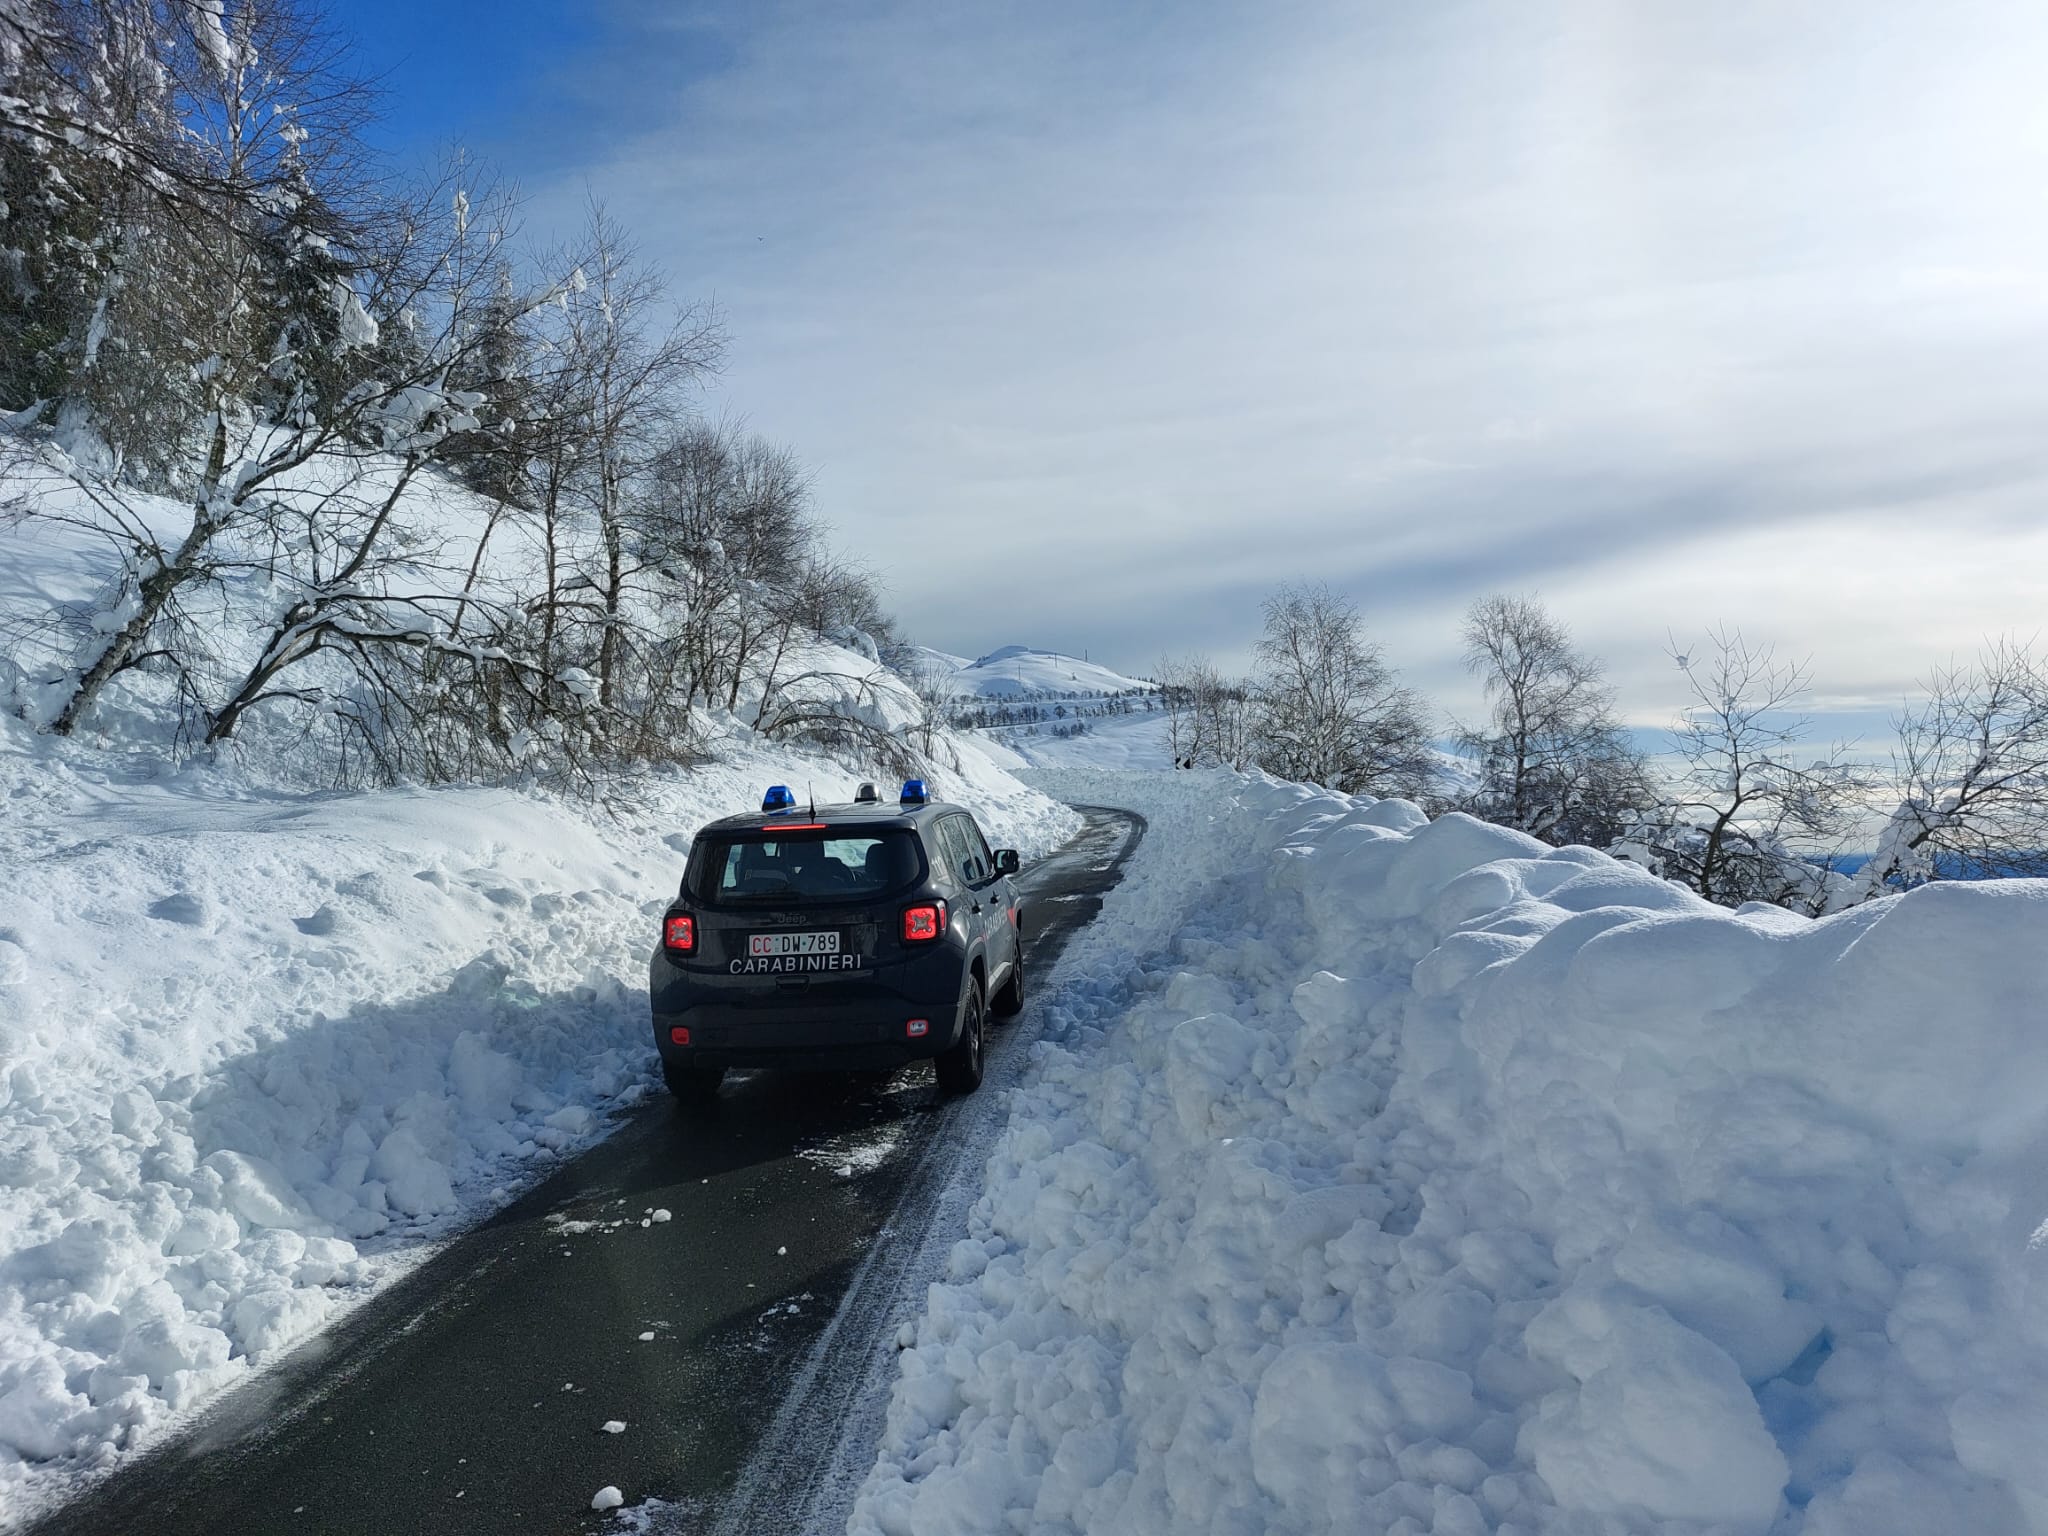 strade panoramica zegna chiusa neve (4)